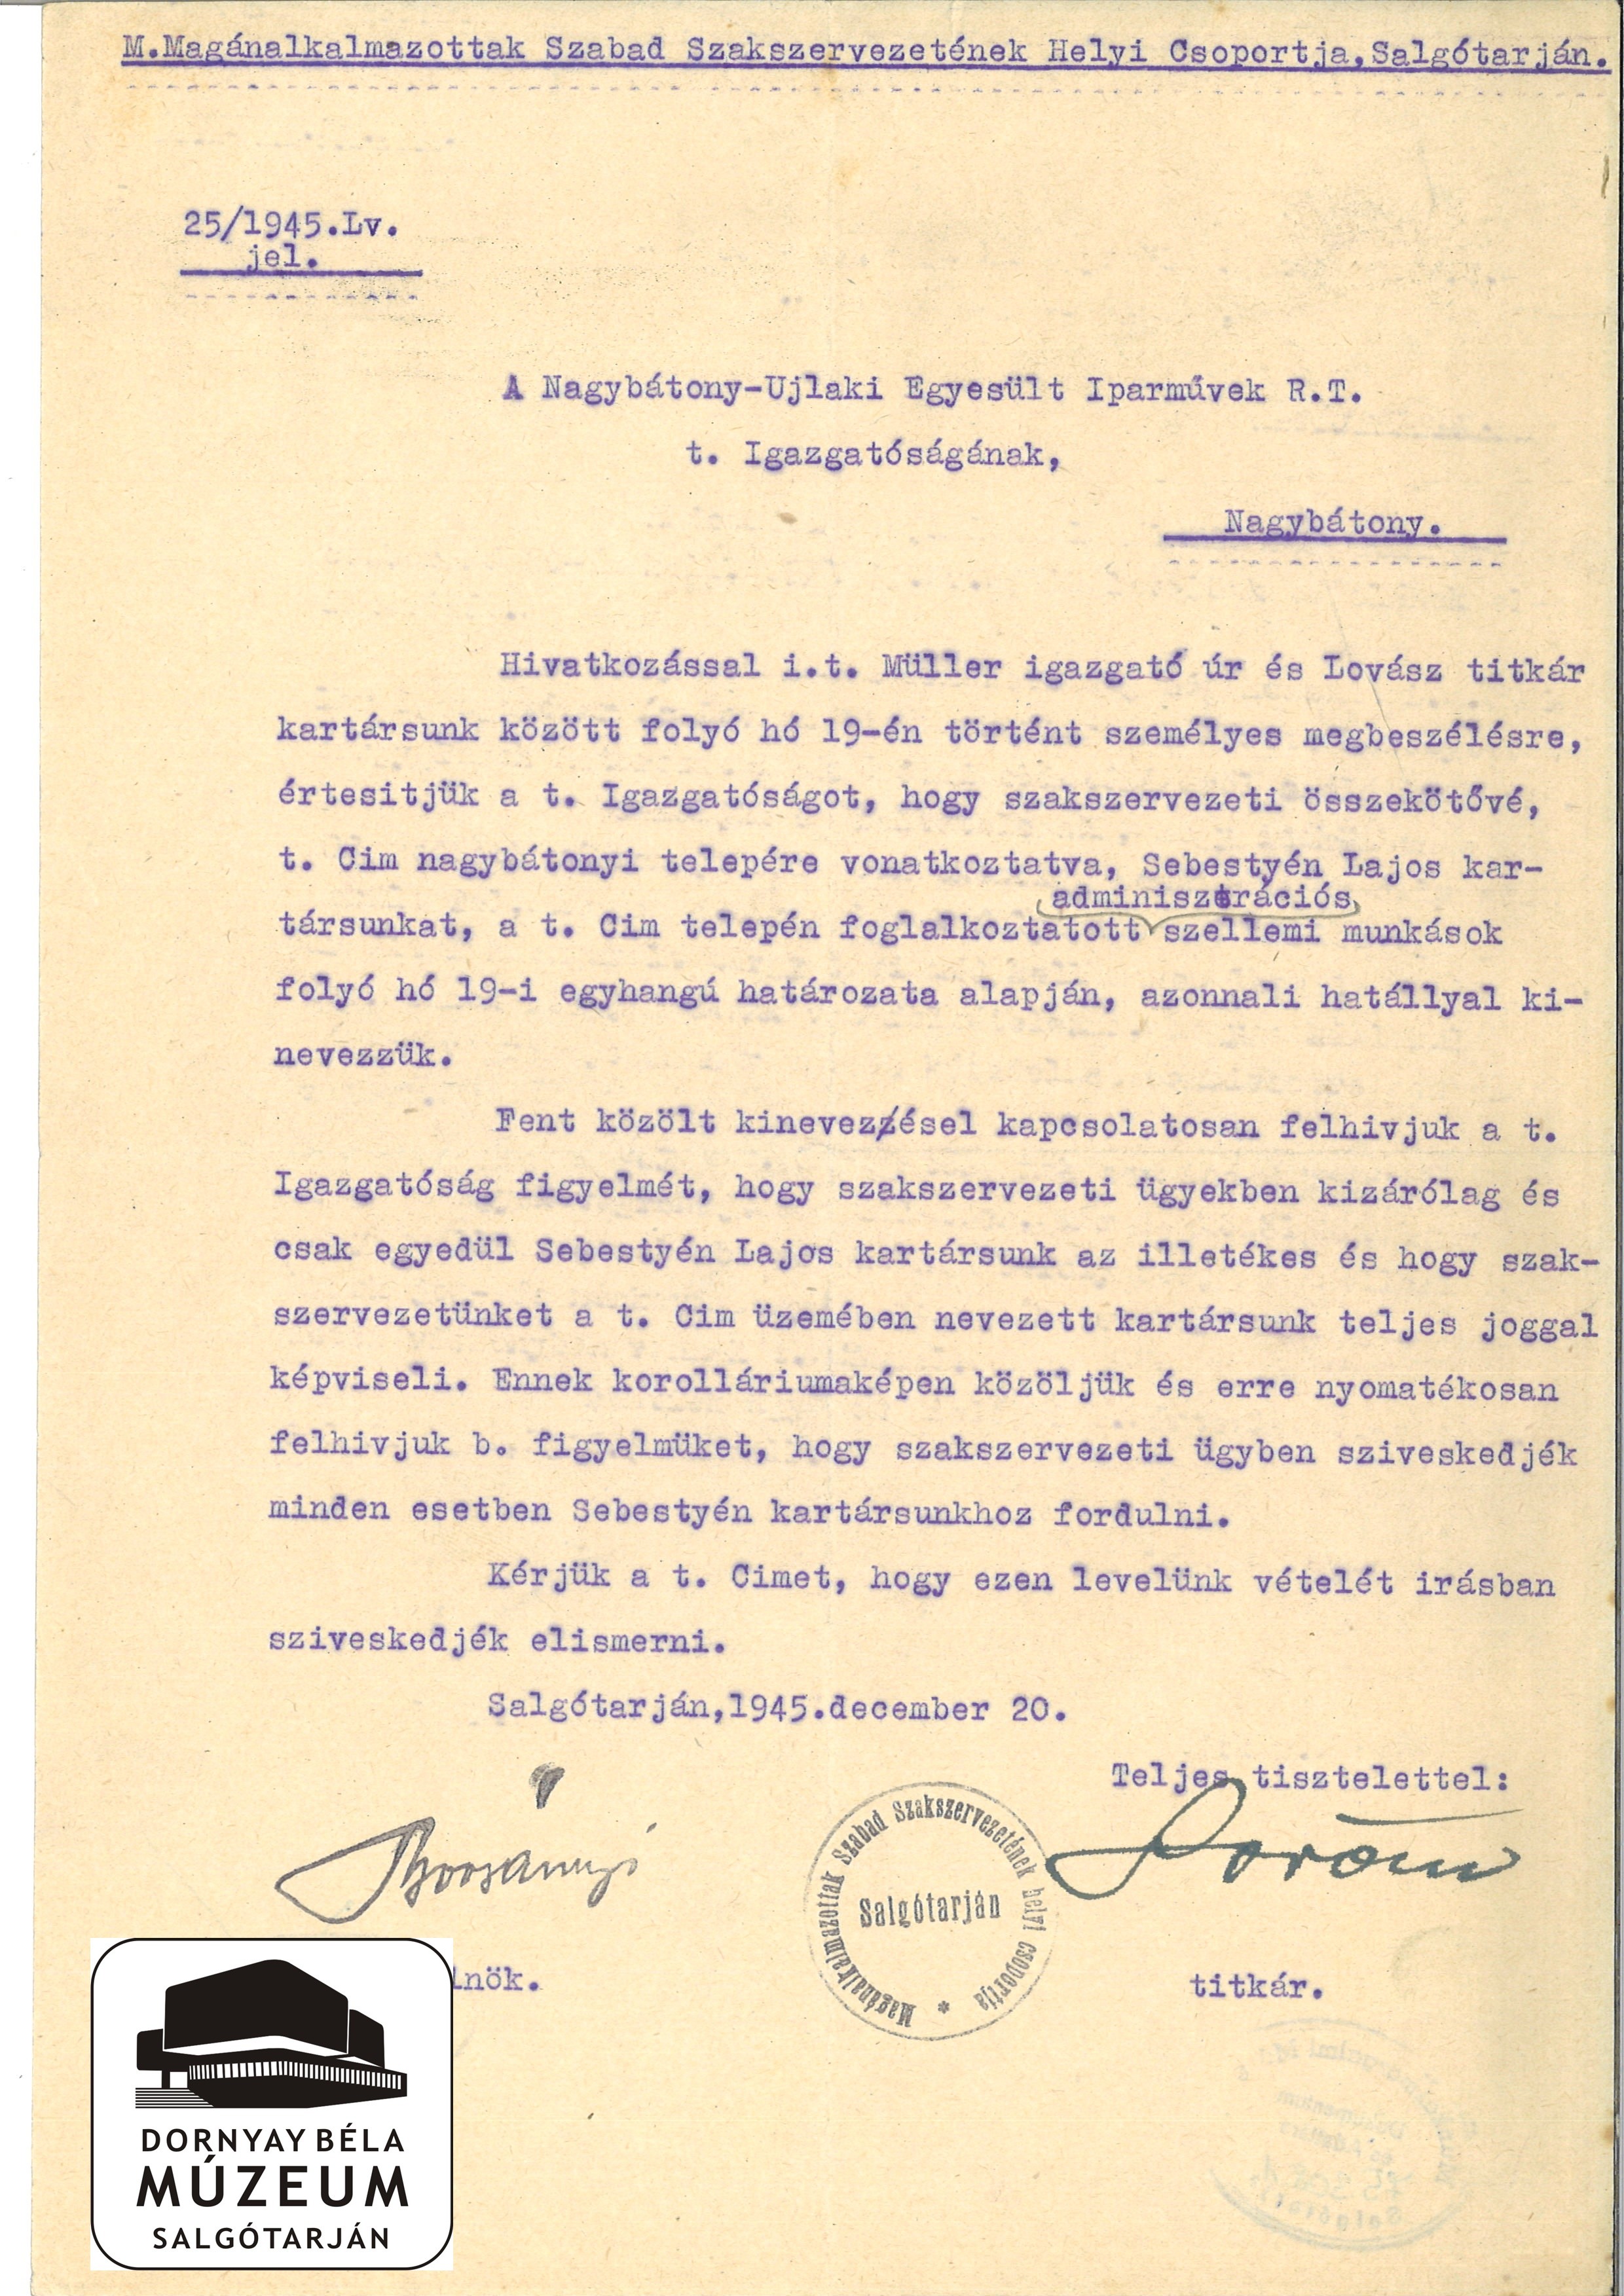 Nagybátonyi szakszervezeti összekötő kinevezése (Dornyay Béla Múzeum, Salgótarján CC BY-NC-SA)